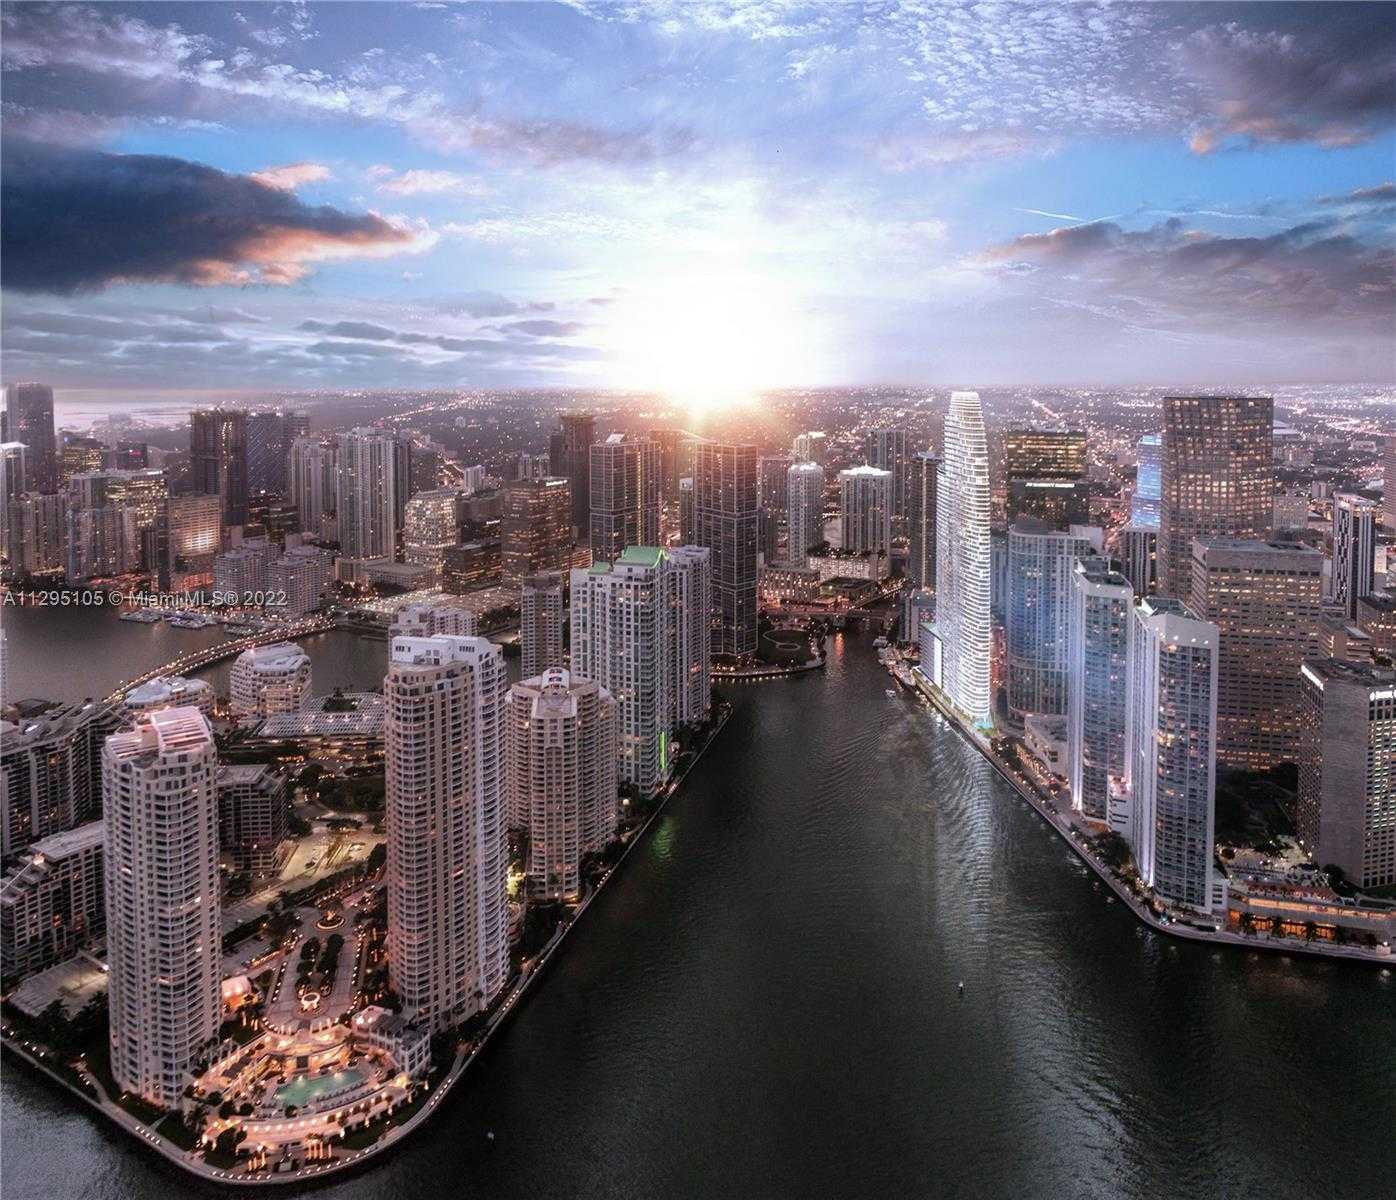 View Miami, FL 33131 condo